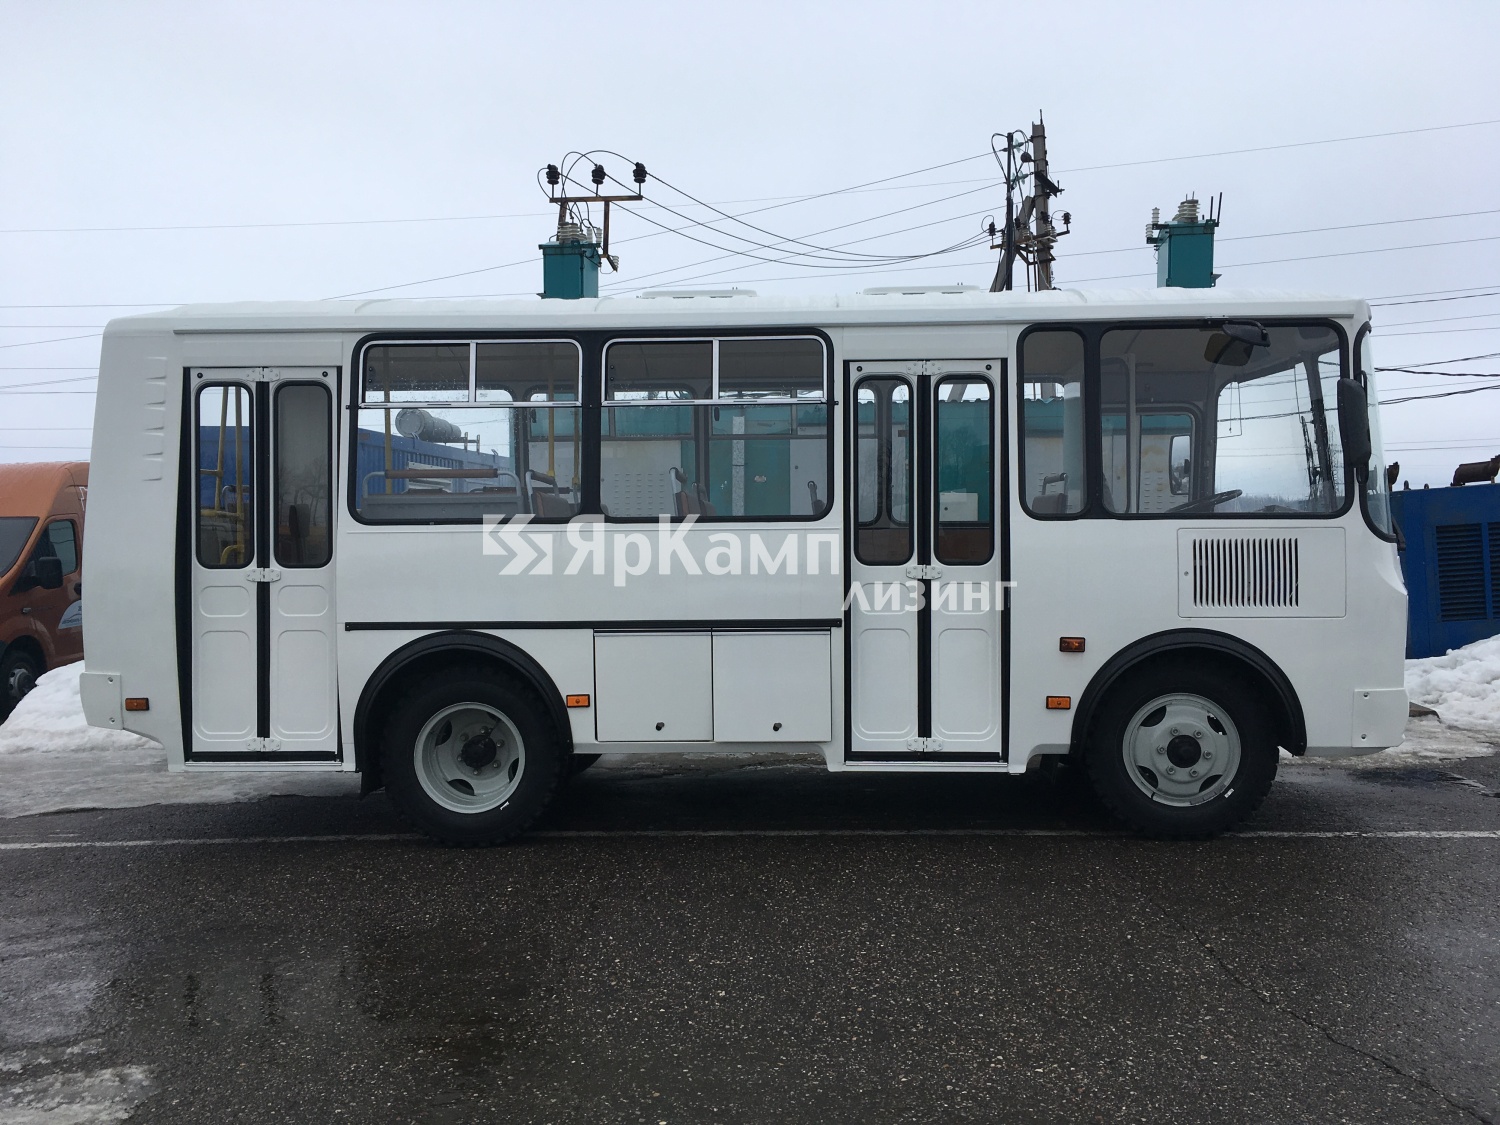 "ЯрКамп-Лизинг" произвел передачу автобуса ПАЗ-32054 в финансовую аренду